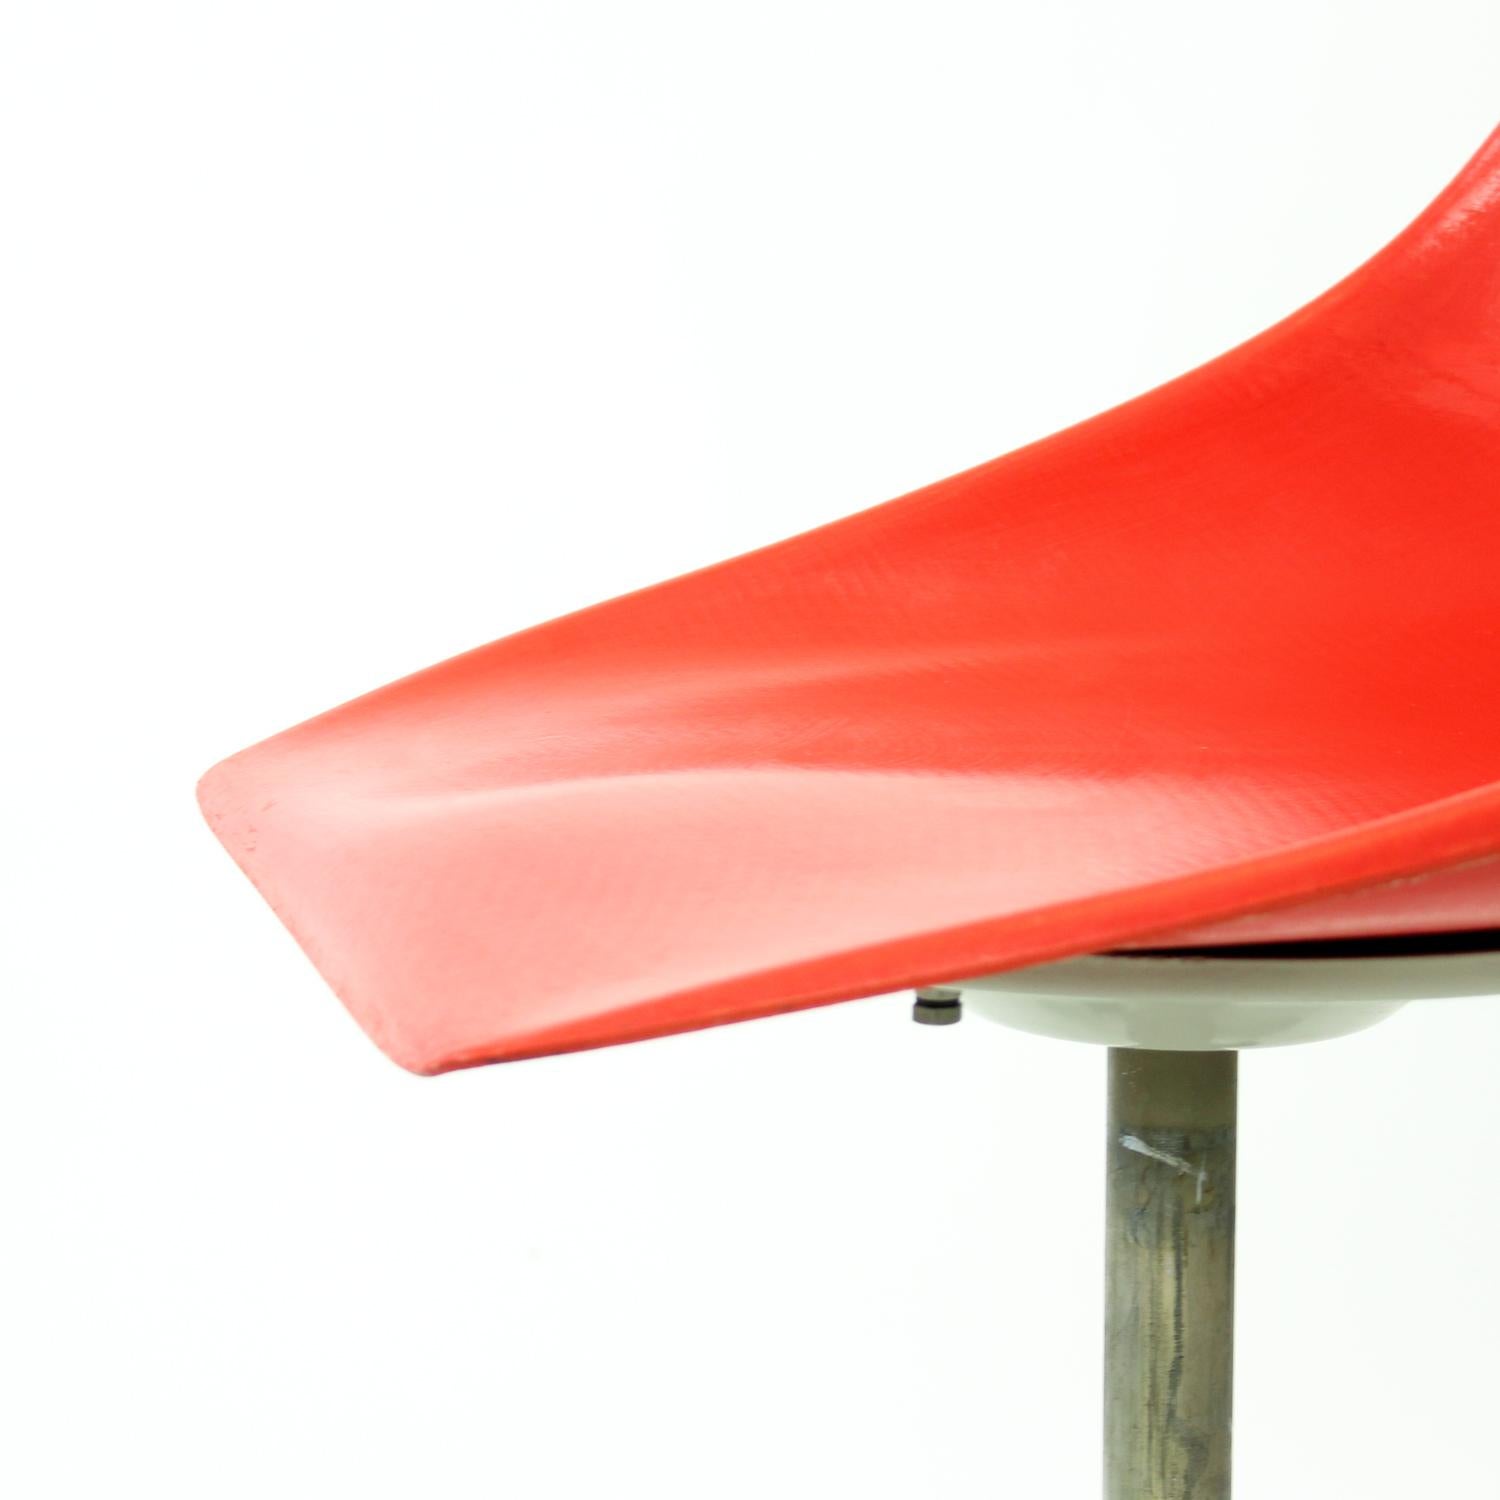 Red Tram Chair By Miroslav Navratil For Vertex, 1960s For Sale 6